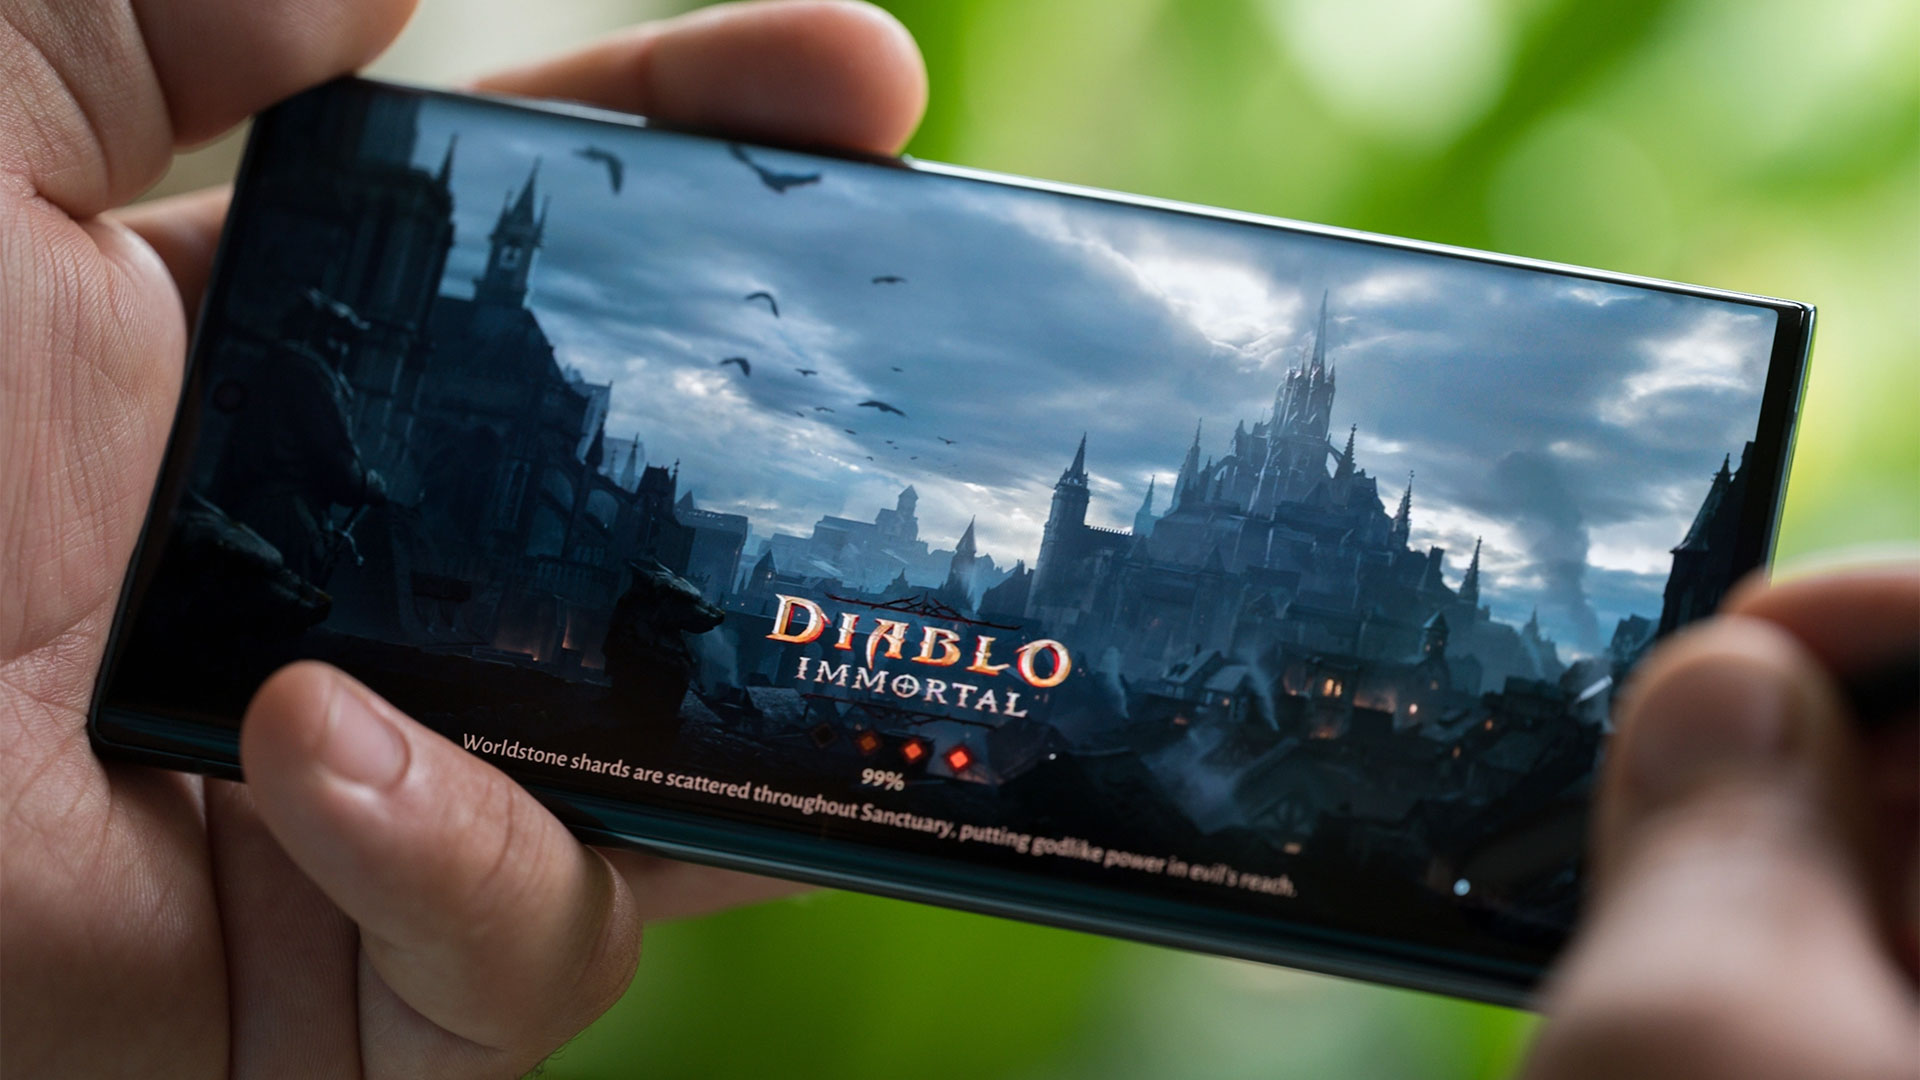 گوشی Galaxy S22 Ultra 5G درحال اجرای بازی دیابلو ایمورتال